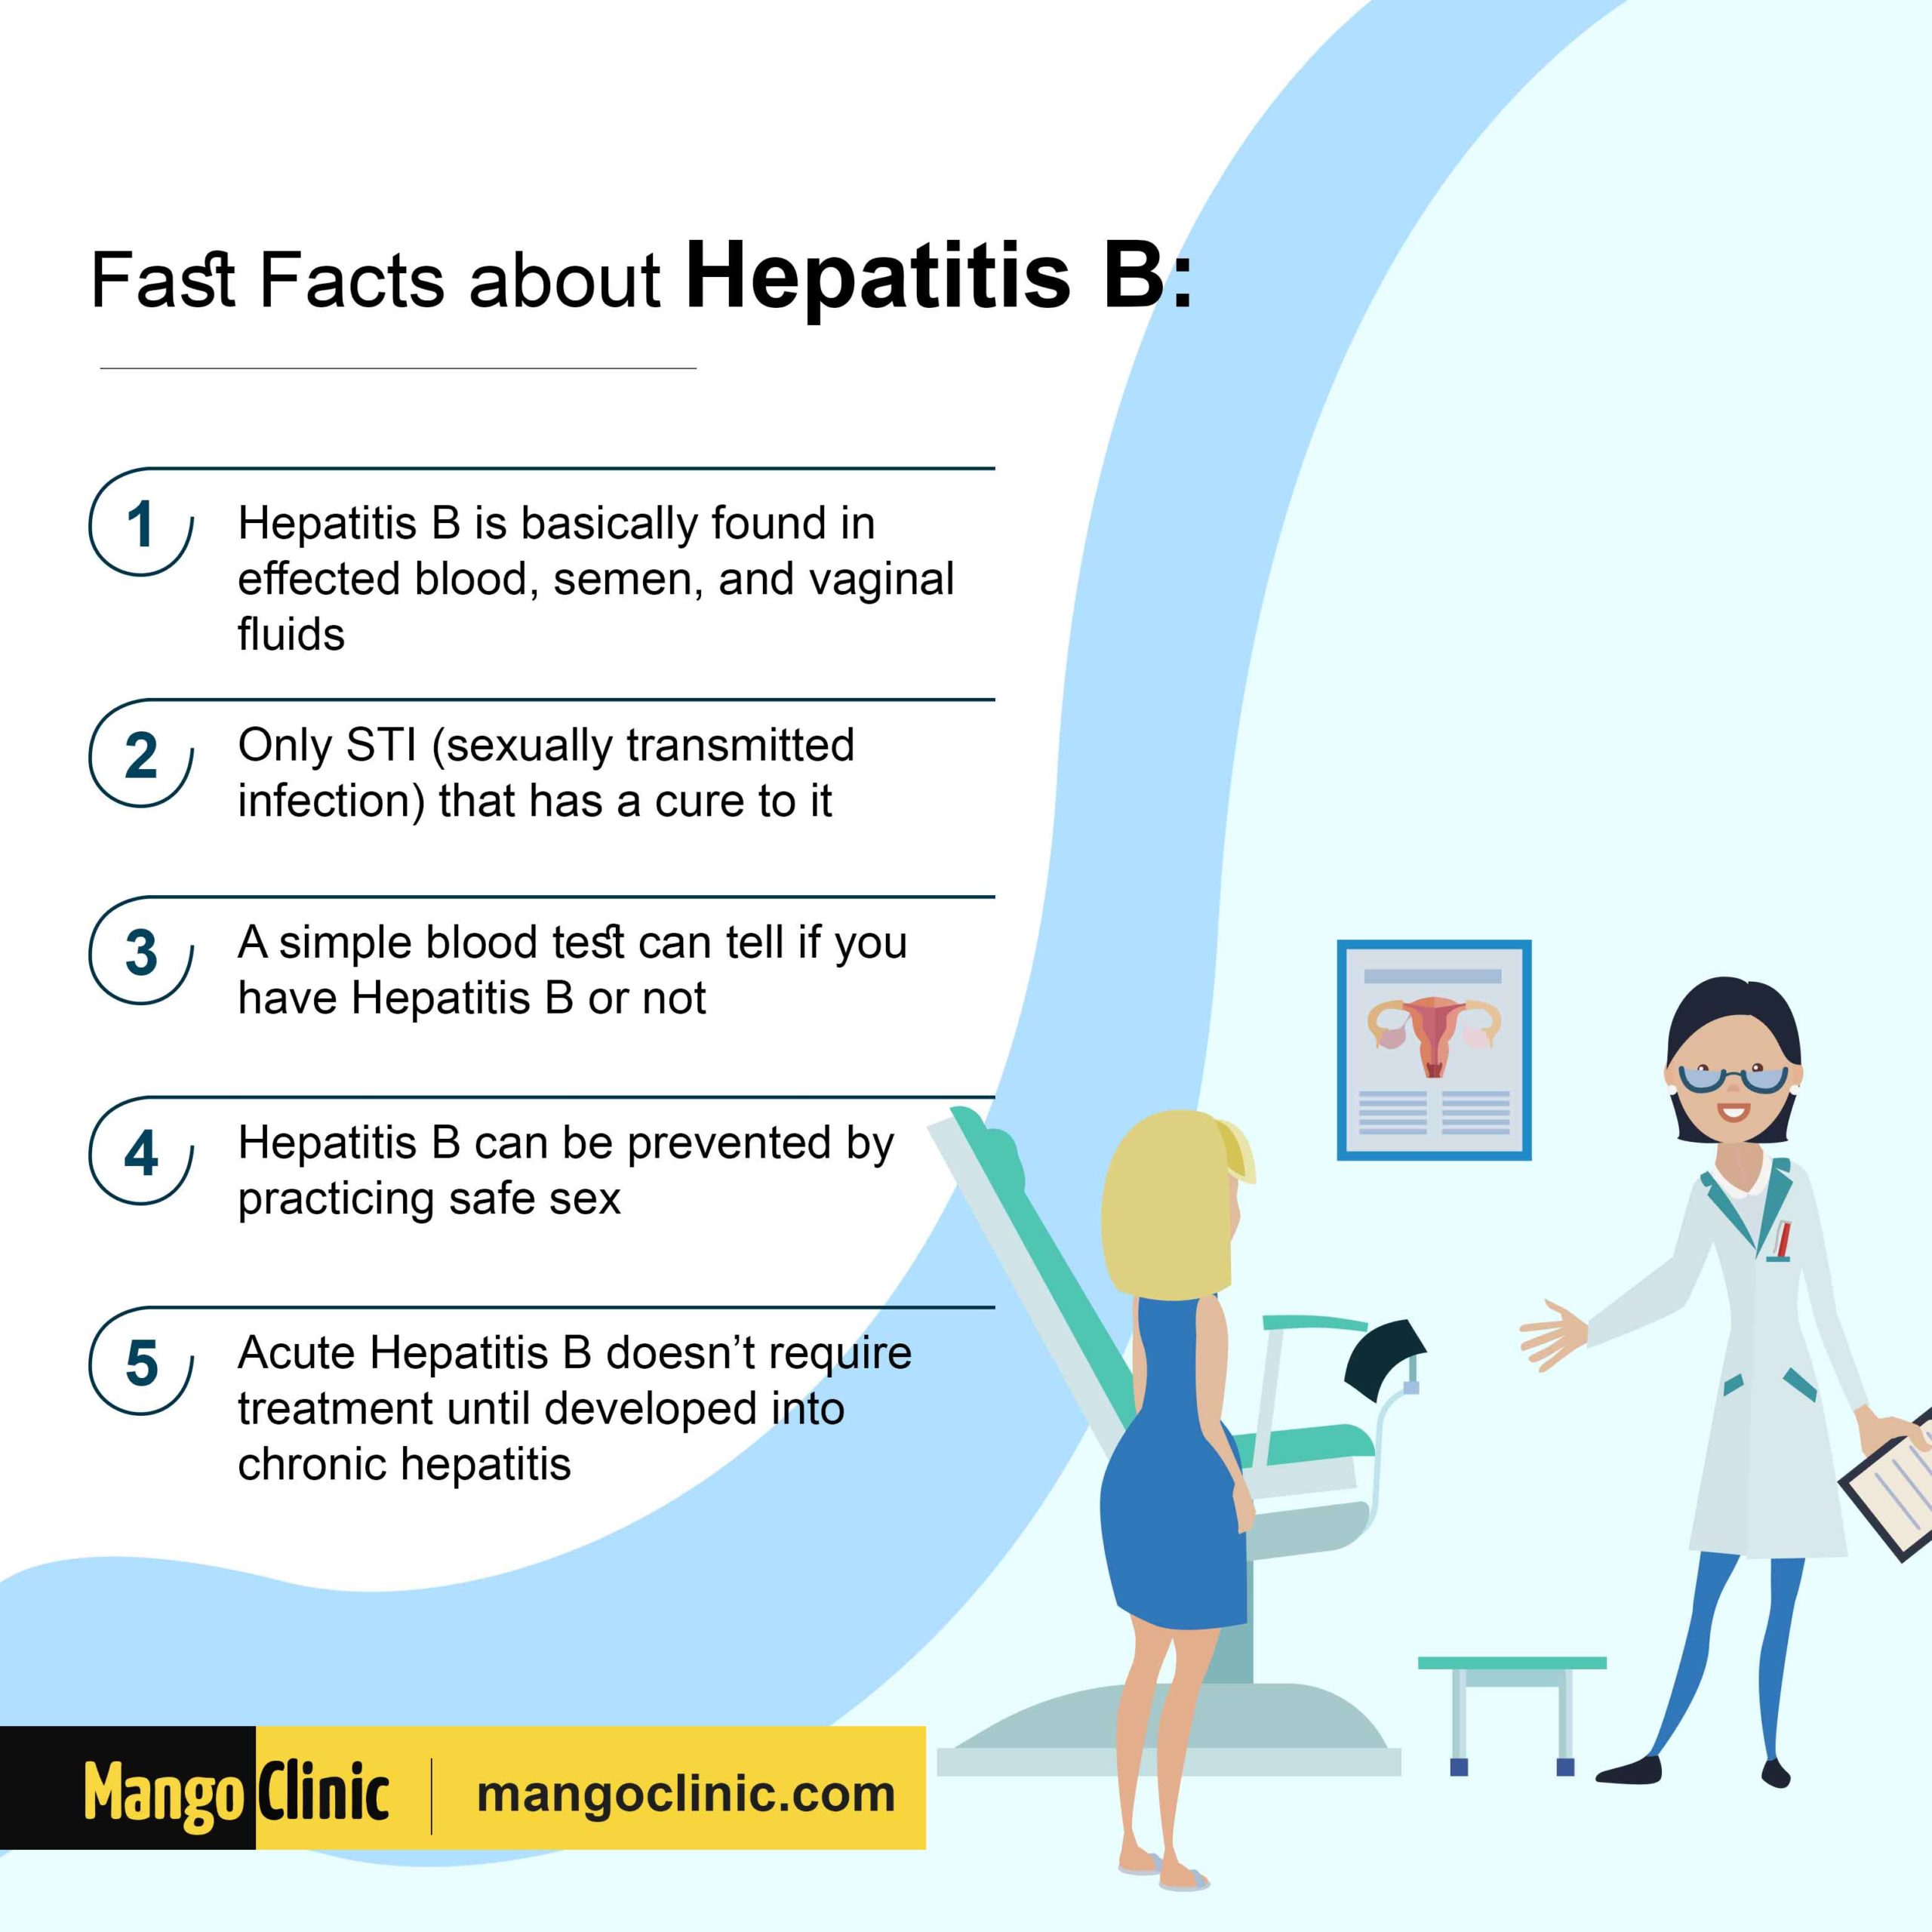 Hepatitis B facts